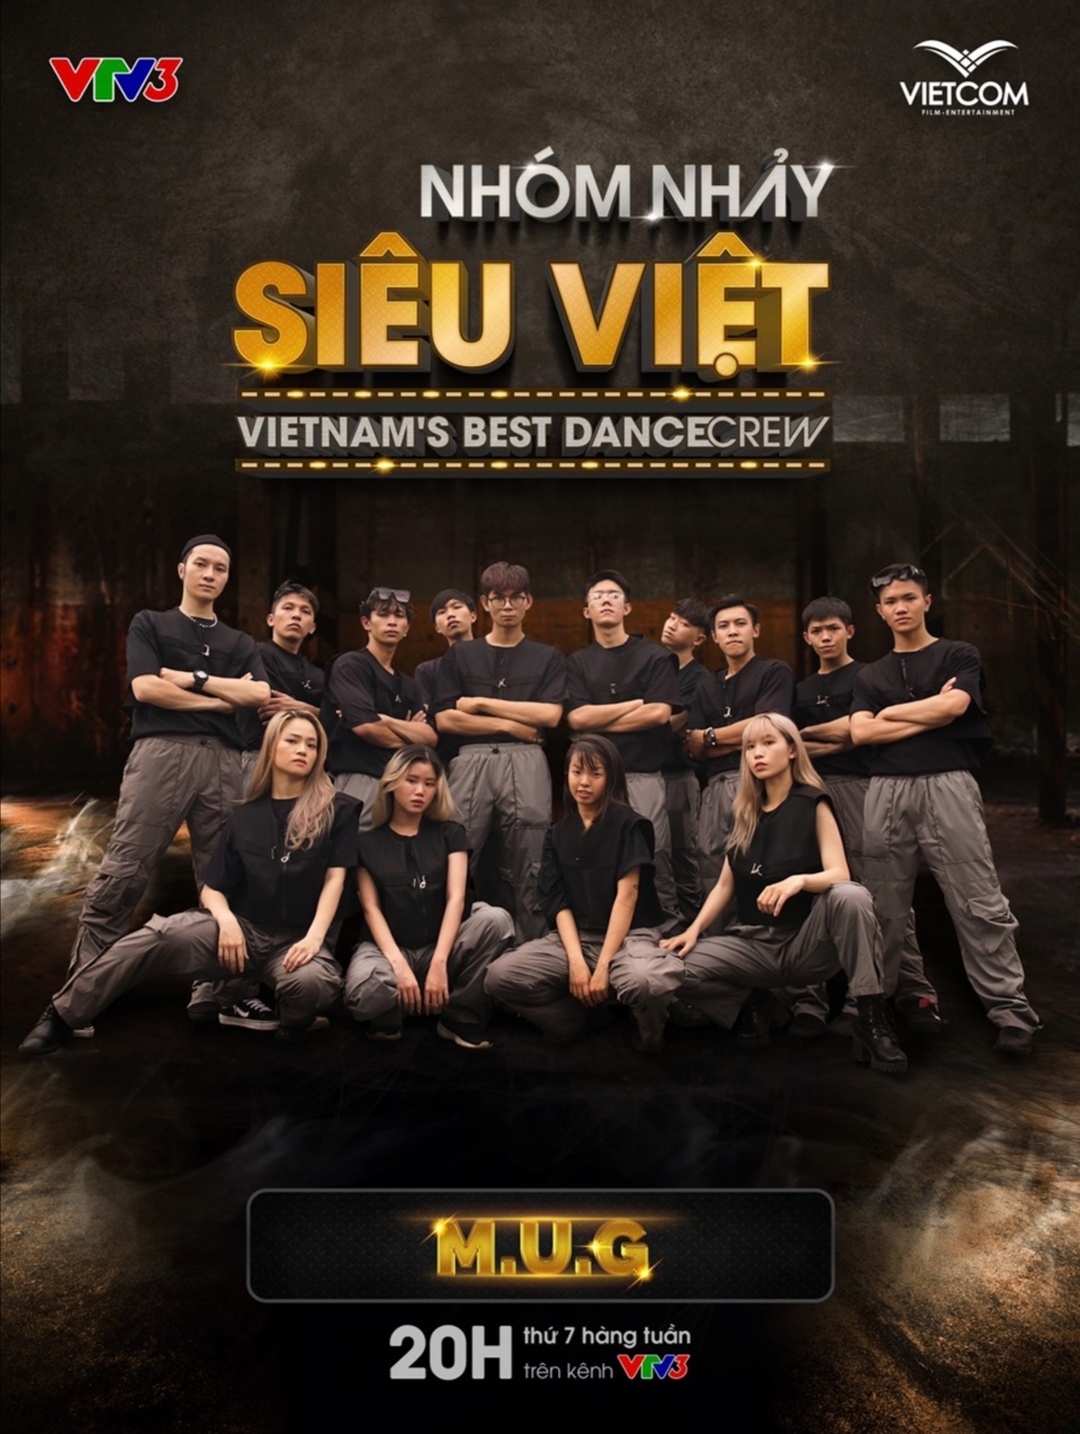 Screenshot 20210519 172007 Biên đạo Alex Tú mang nhóm nhảy đến với sân chơi Nhóm nhảy siêu Việt   Vietnam’s Best Dance Crew